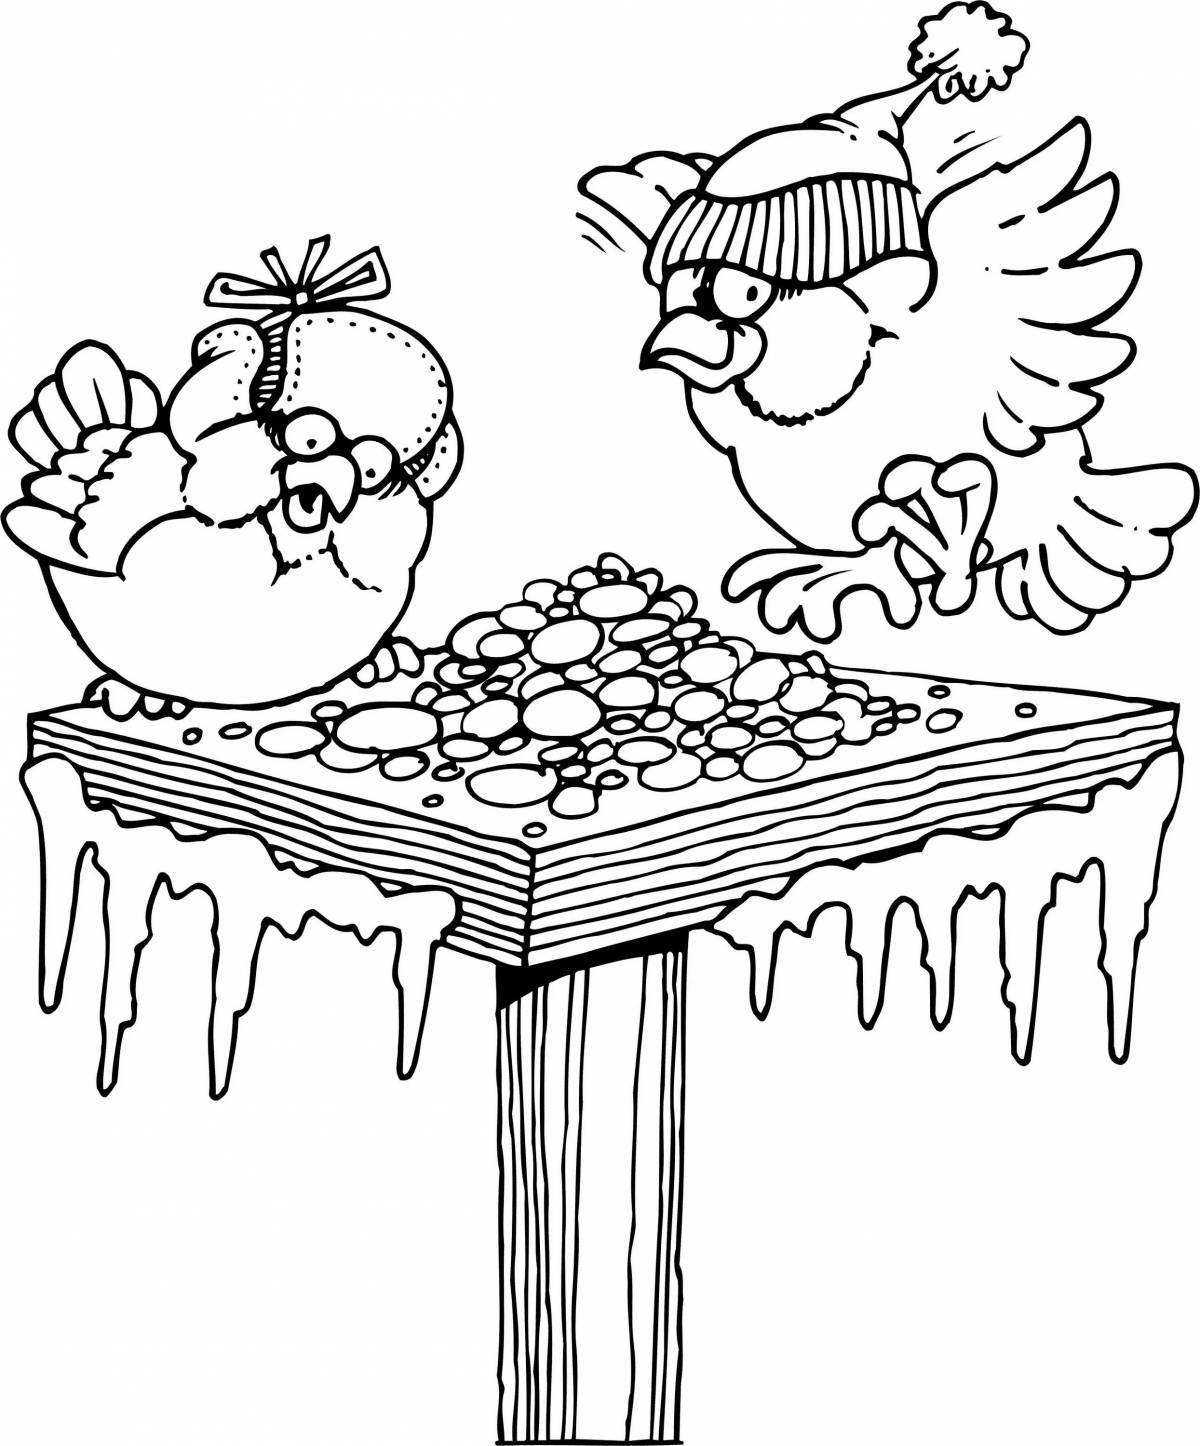 Fun feed the birds in winter drawing для детей 6-7 лет